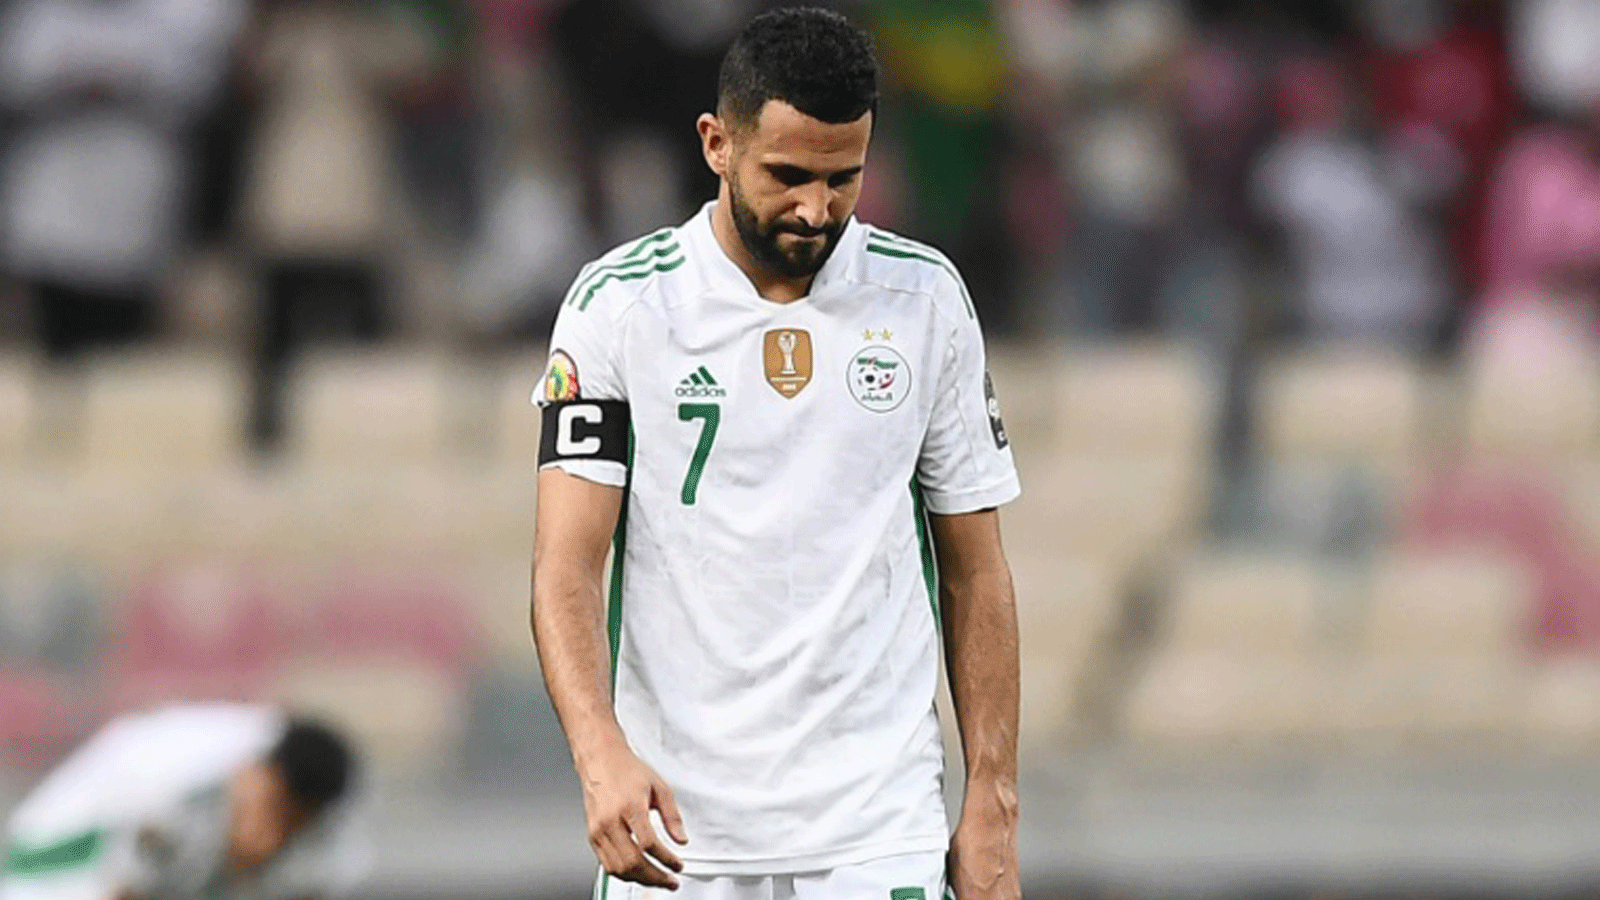 قائد المنتخب الجزائري رياض محرز مستاء عقب الخسارة أمام ساحل العاج 1-3 في الجولة الاخيرة من دور المجموعات لكأس الأمم الأفريقية في الكاميرون في 20 كانون الثاني/يناير 2022.